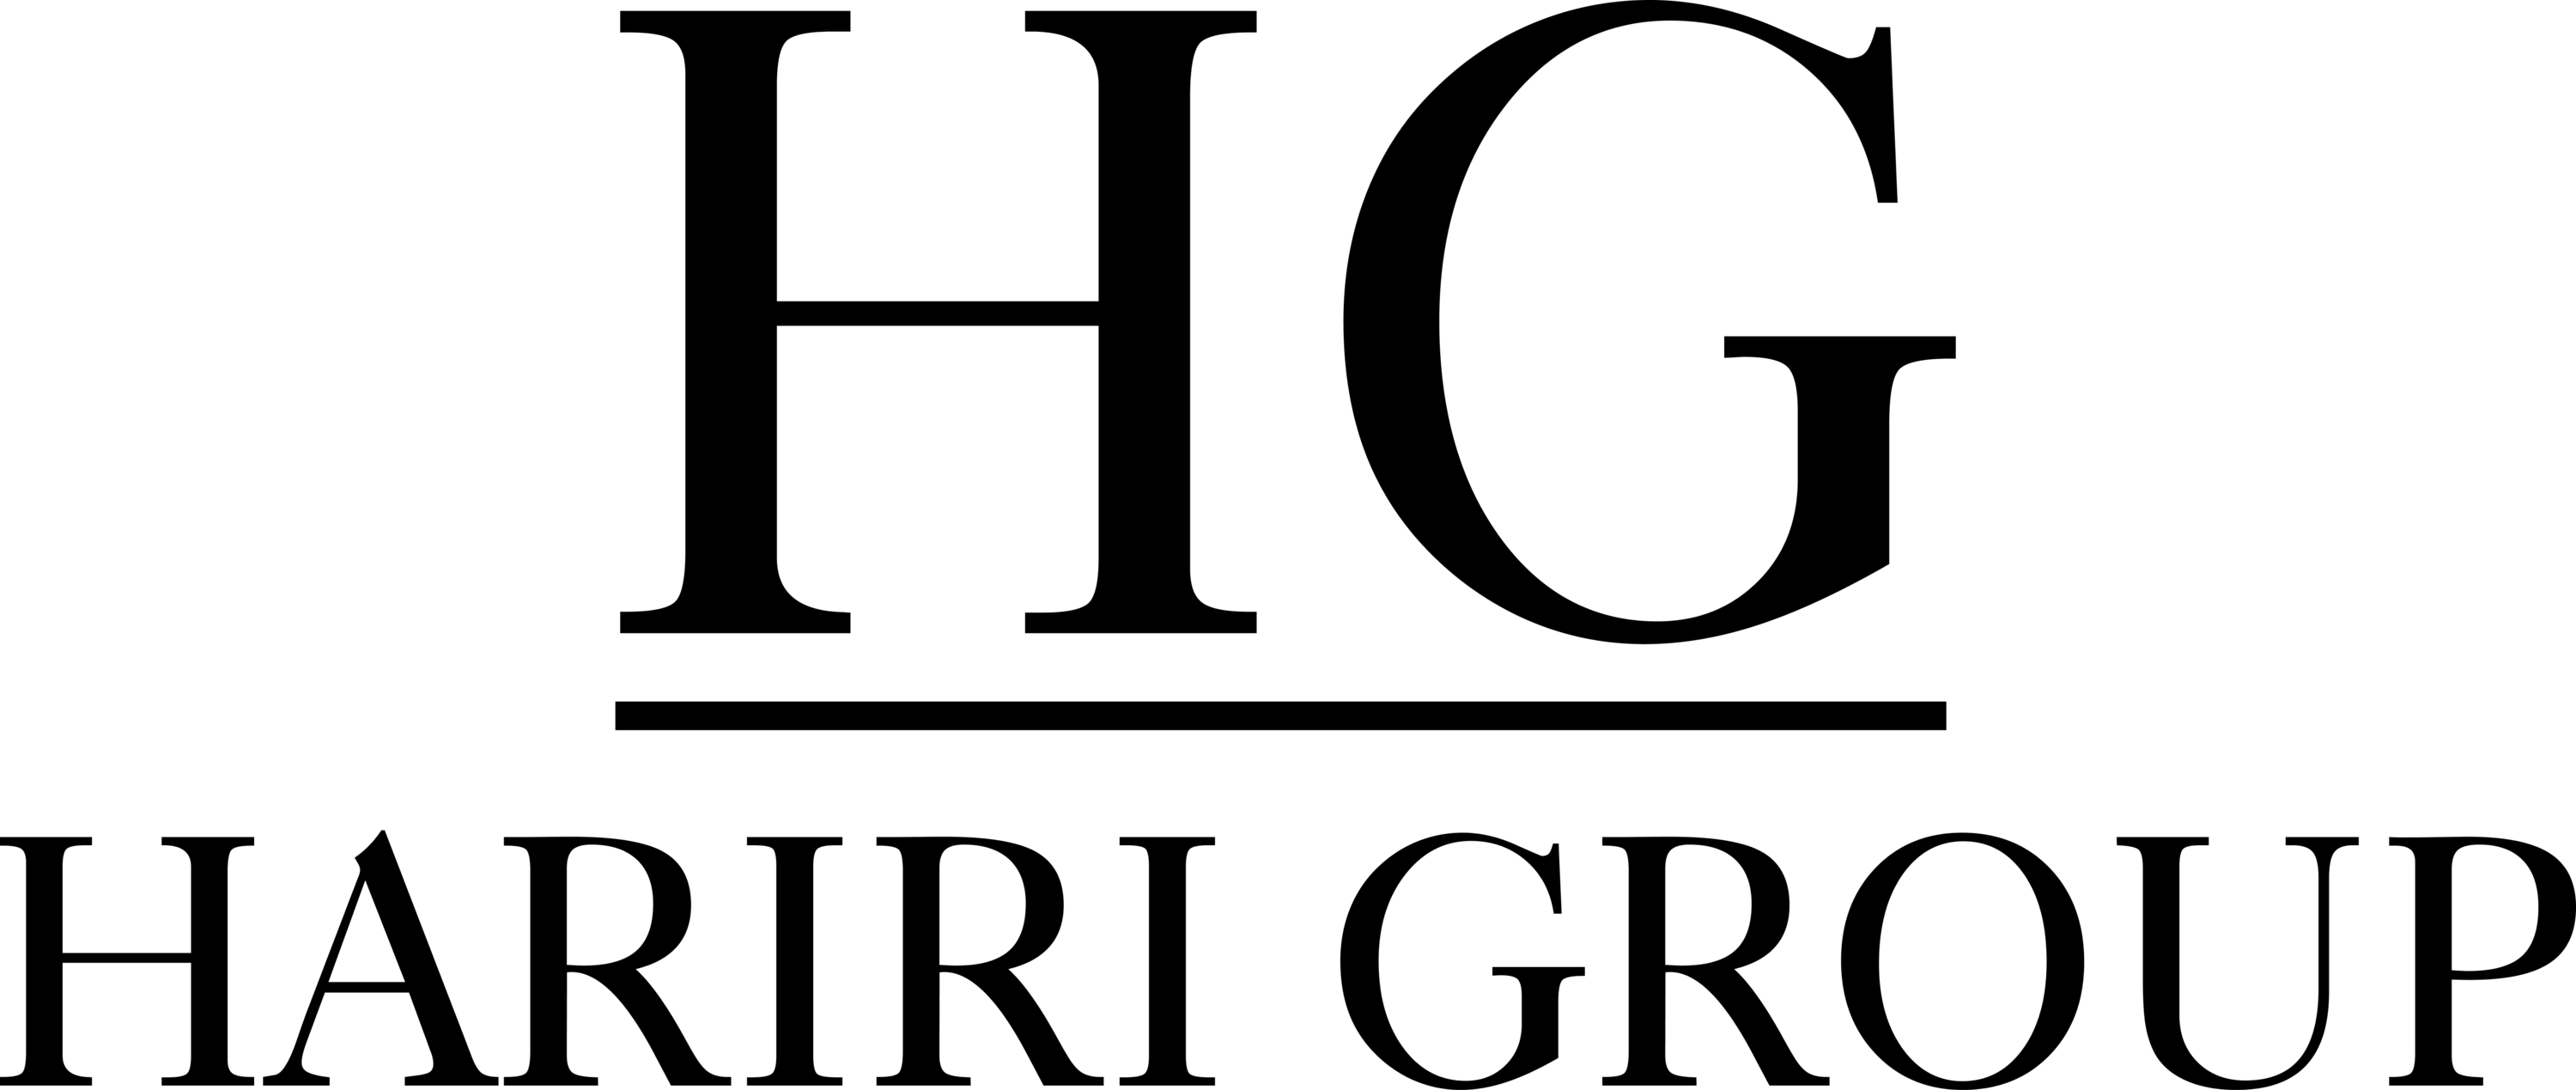 EGV Group Logo photo - 1